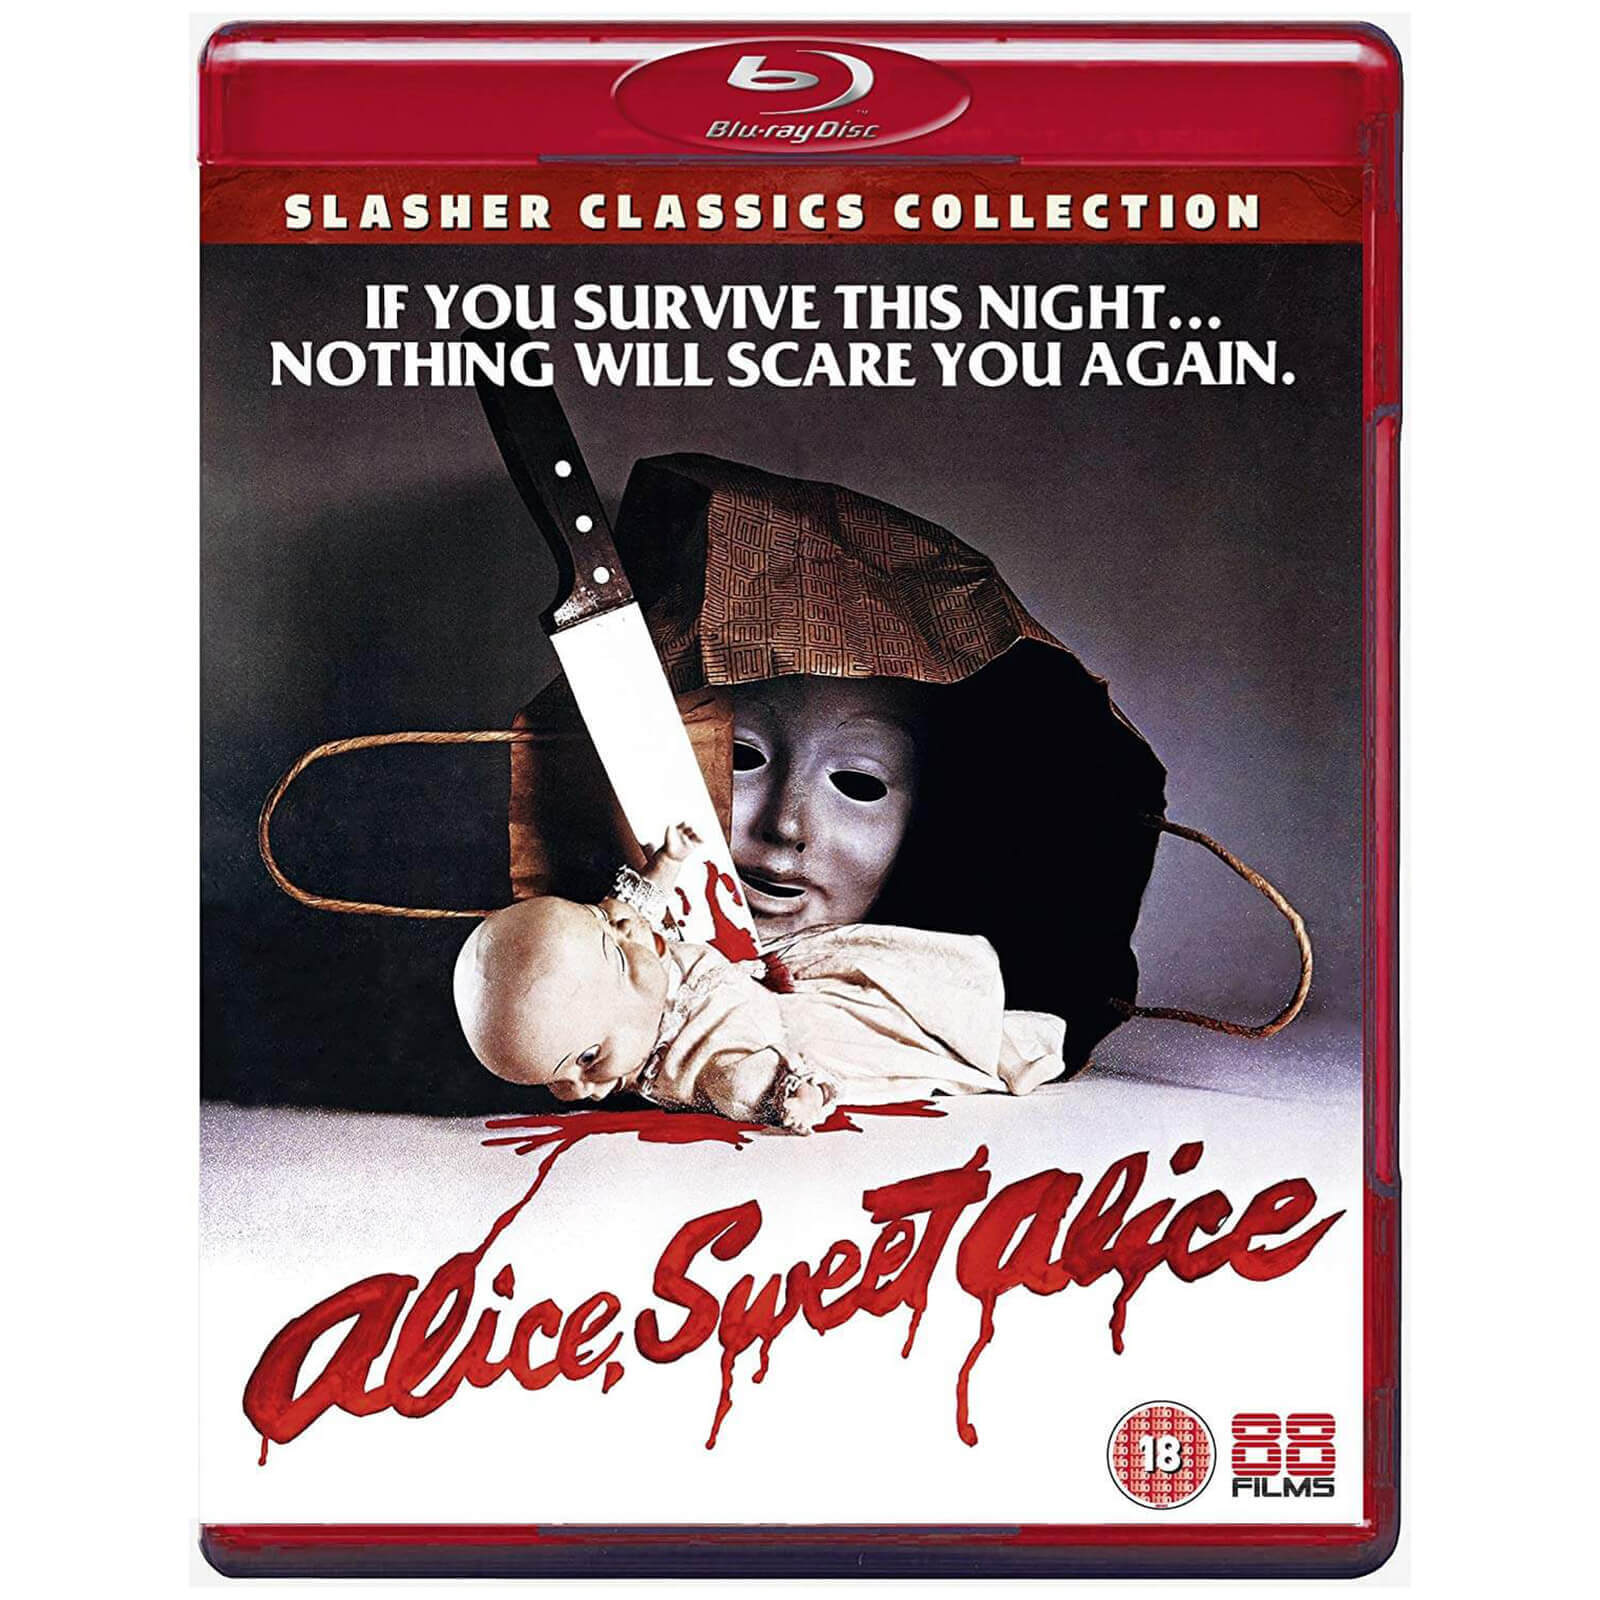 Alice Süße Alice von 88 Films